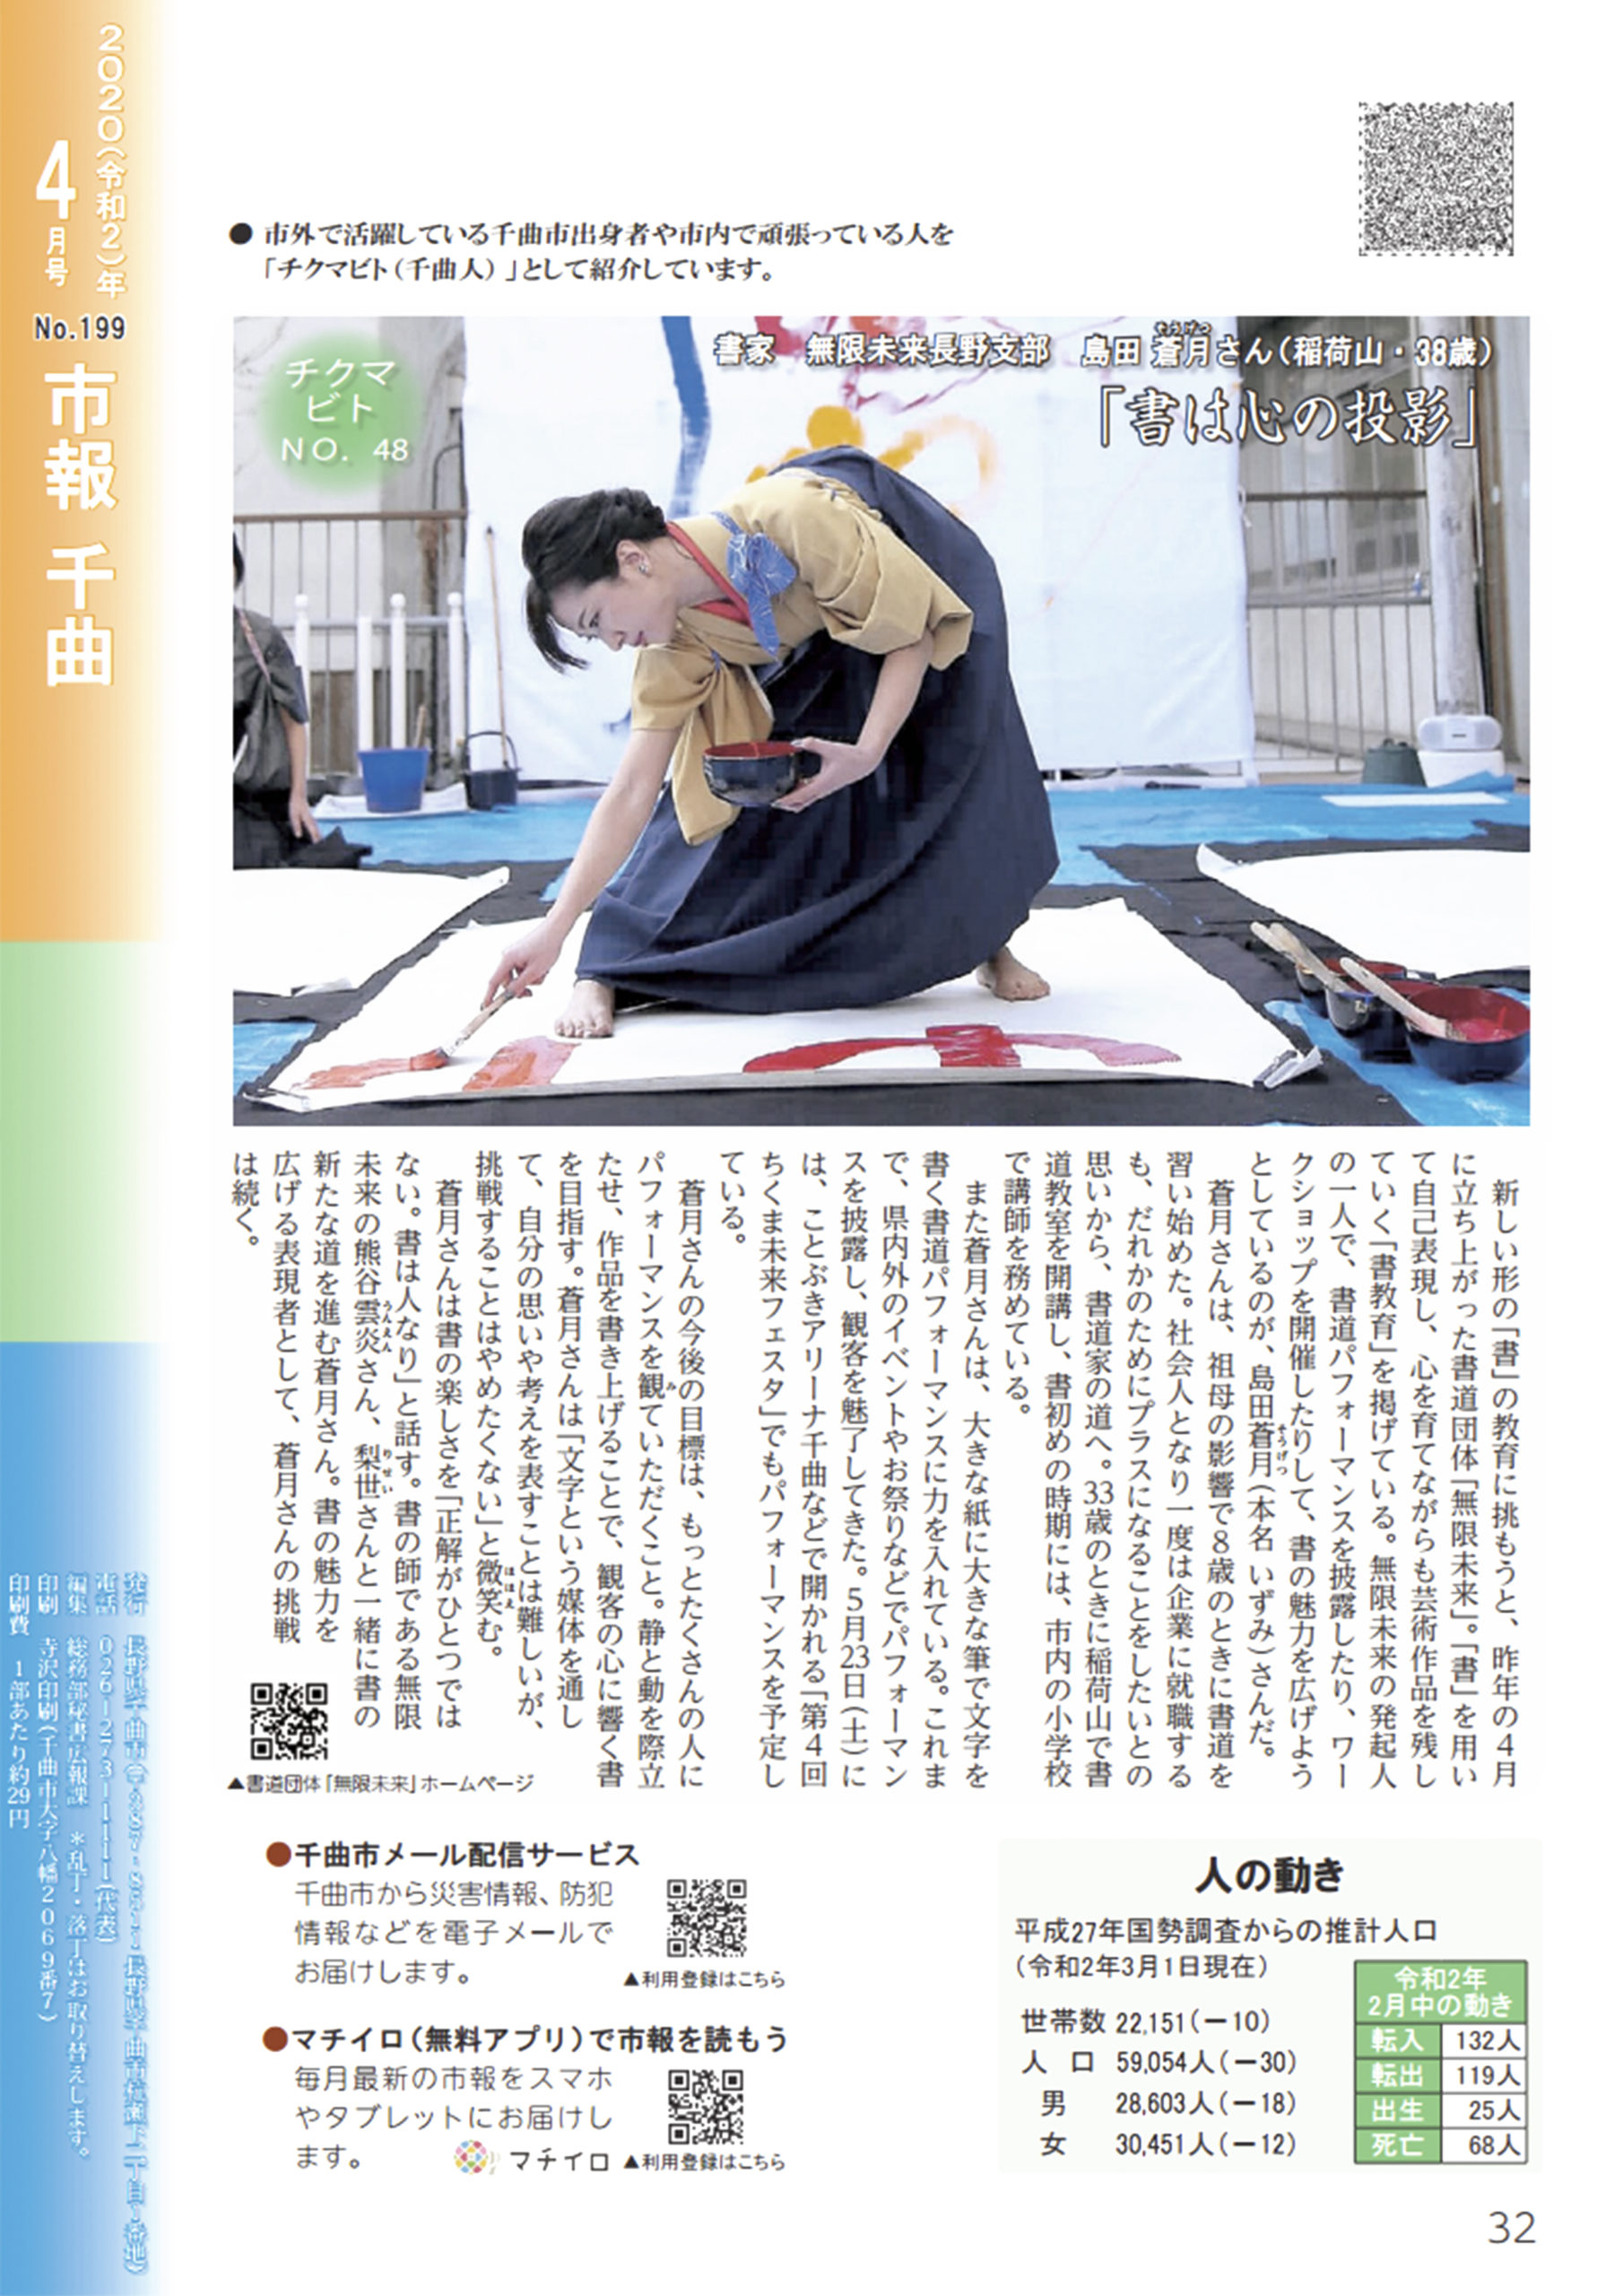 千曲市報「チクマビト」に島田蒼月が掲載されました。 